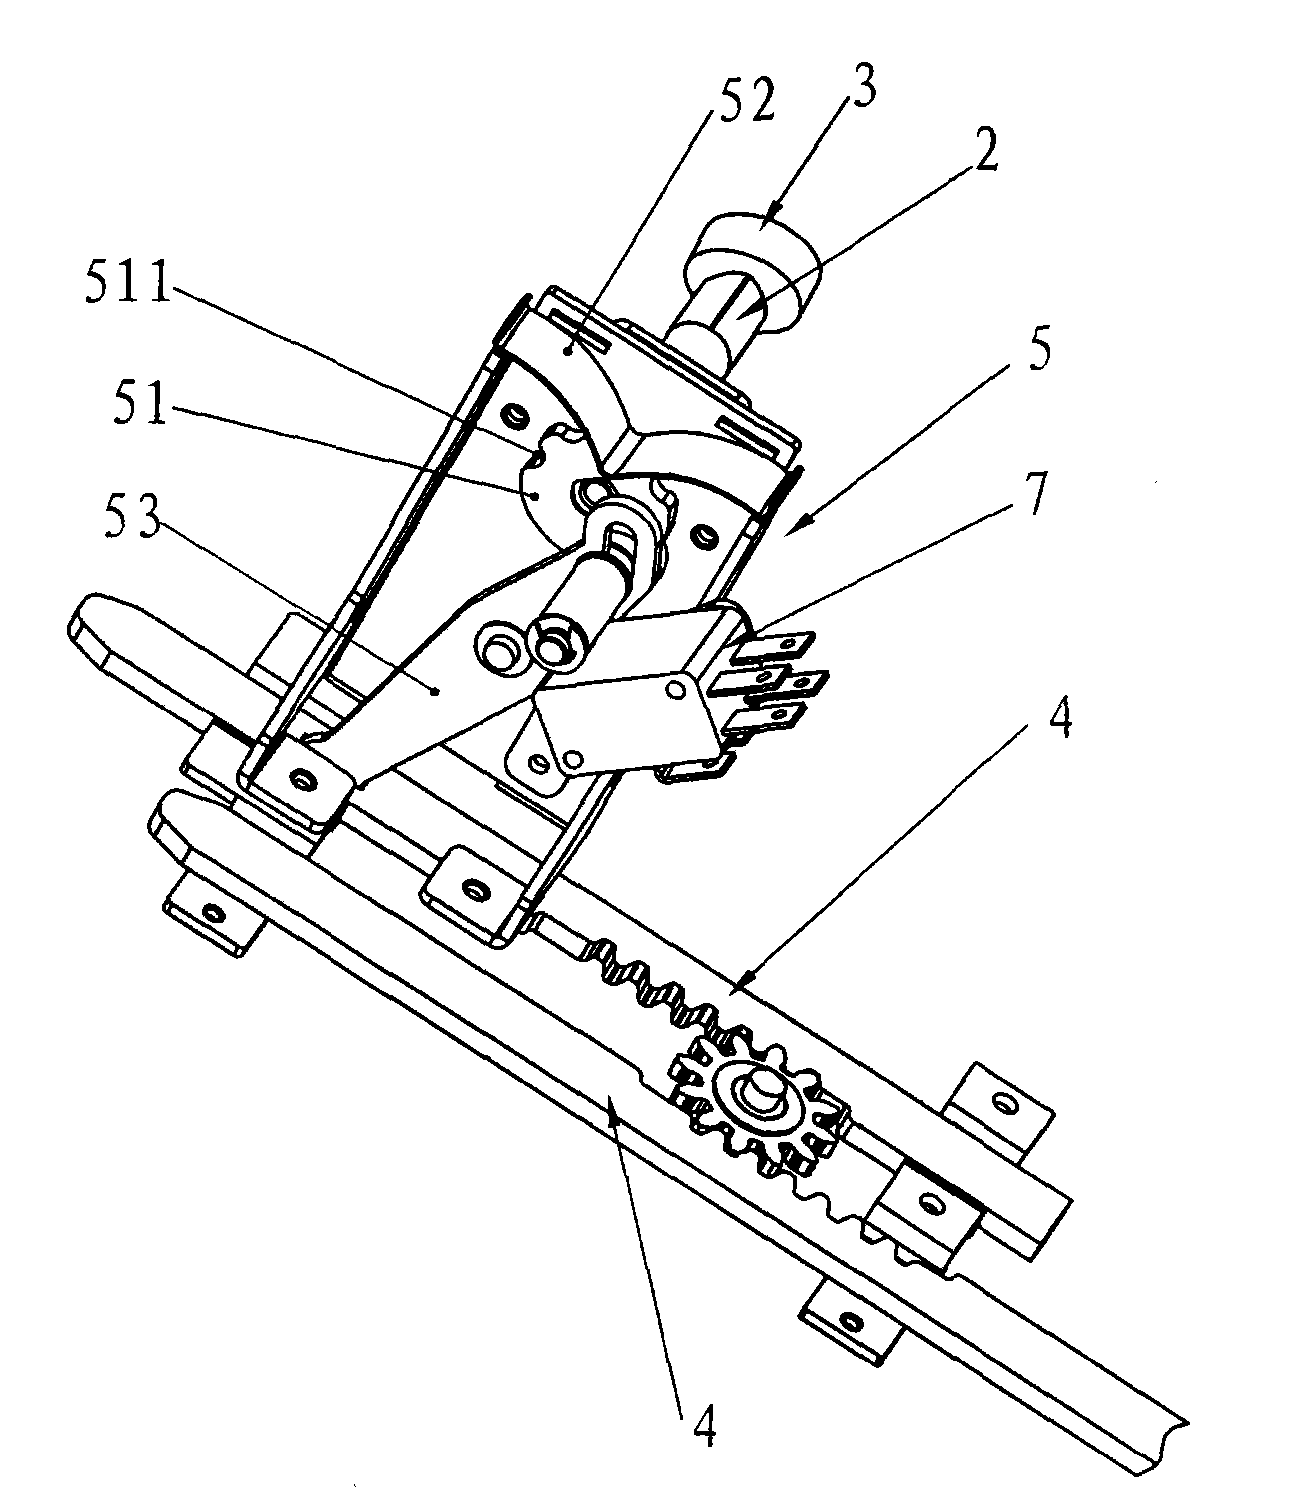 Switch cabinet drawer interlocking mechanism